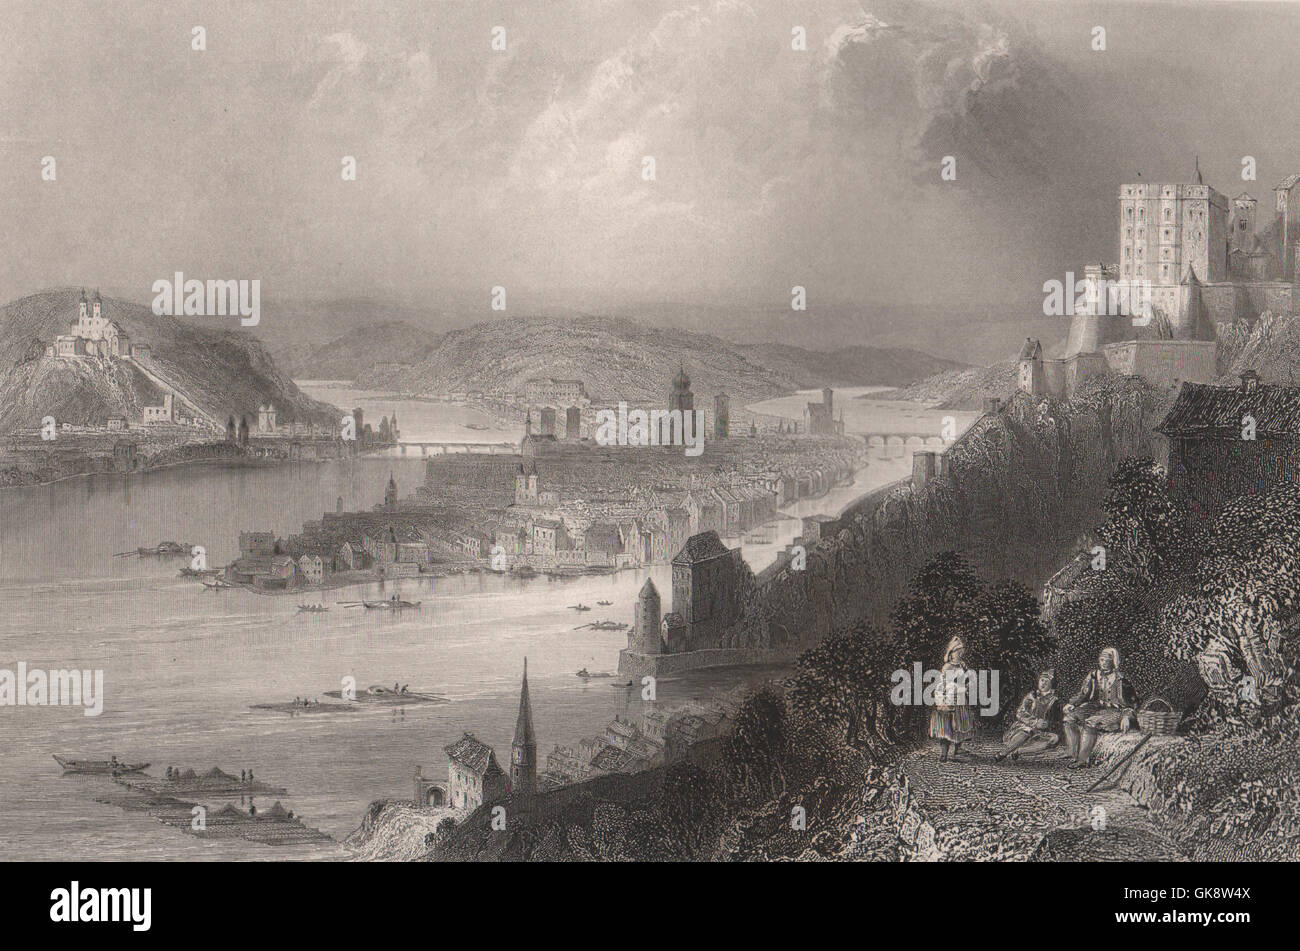 Zusammenfluss von Inn & Donau bei Passau, Bayern. Donau. BARTLETT, 1840 Stockfoto